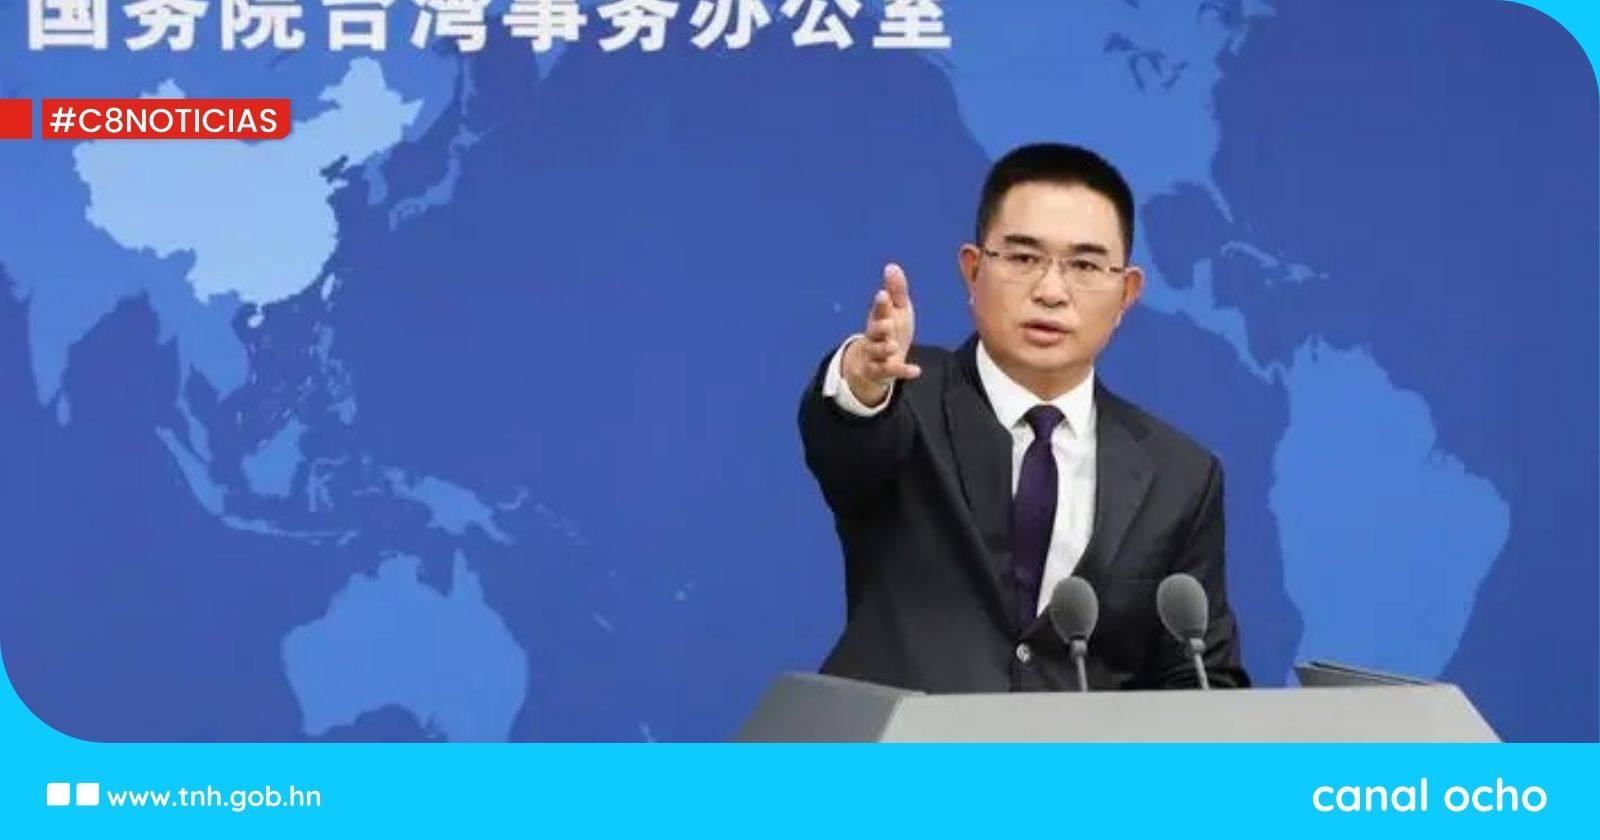 Parte continental de China afirma que Lai envía «señal peligrosa» en su discurso como nuevo líder de Taiwán